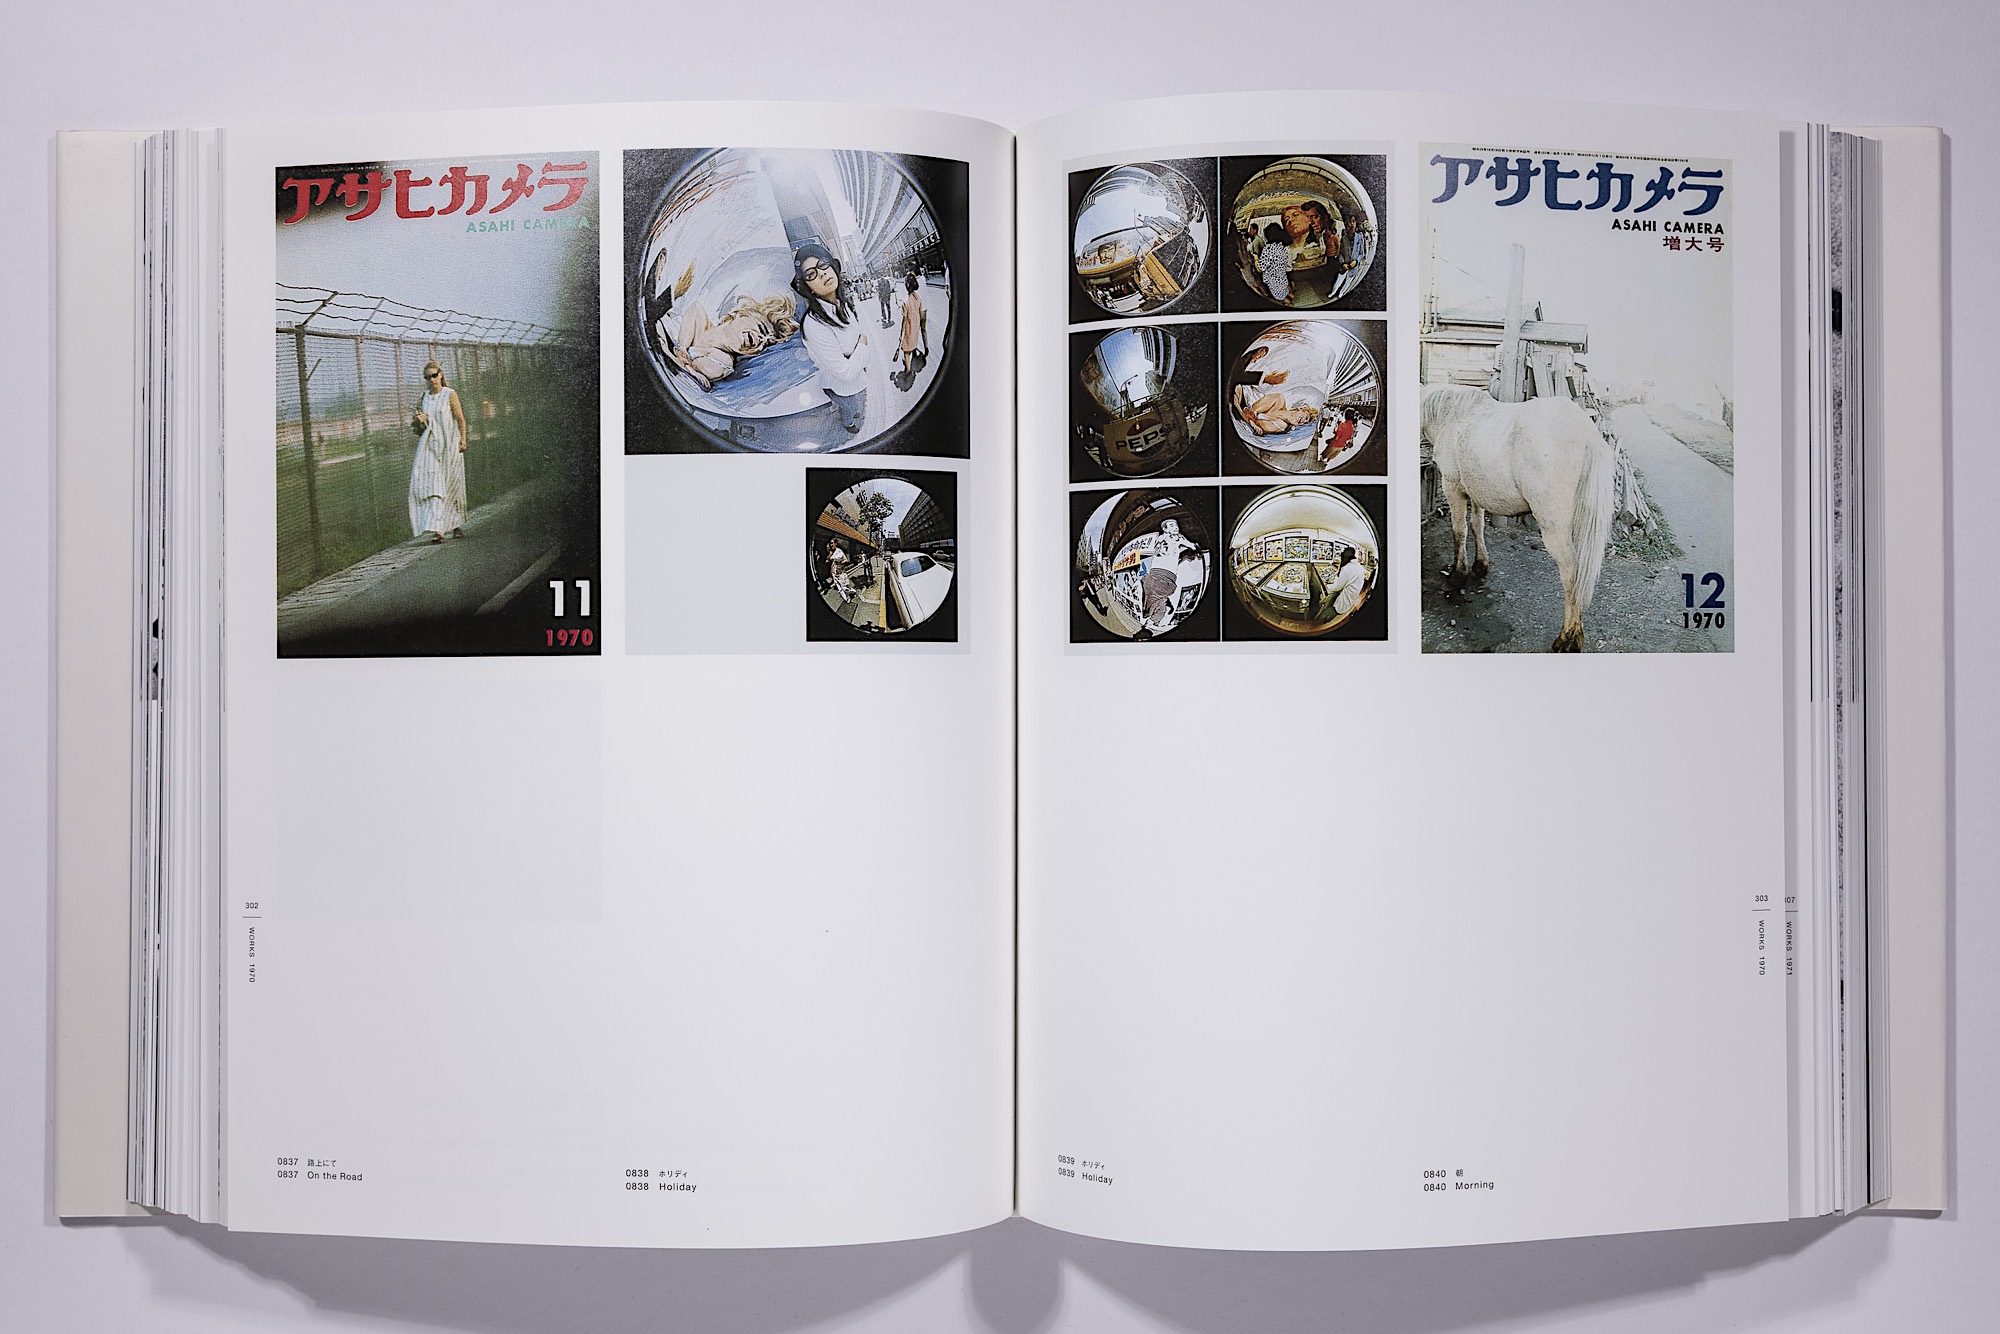 Daido Moriyama - The Complete Works of Daido Moriyama Image 67